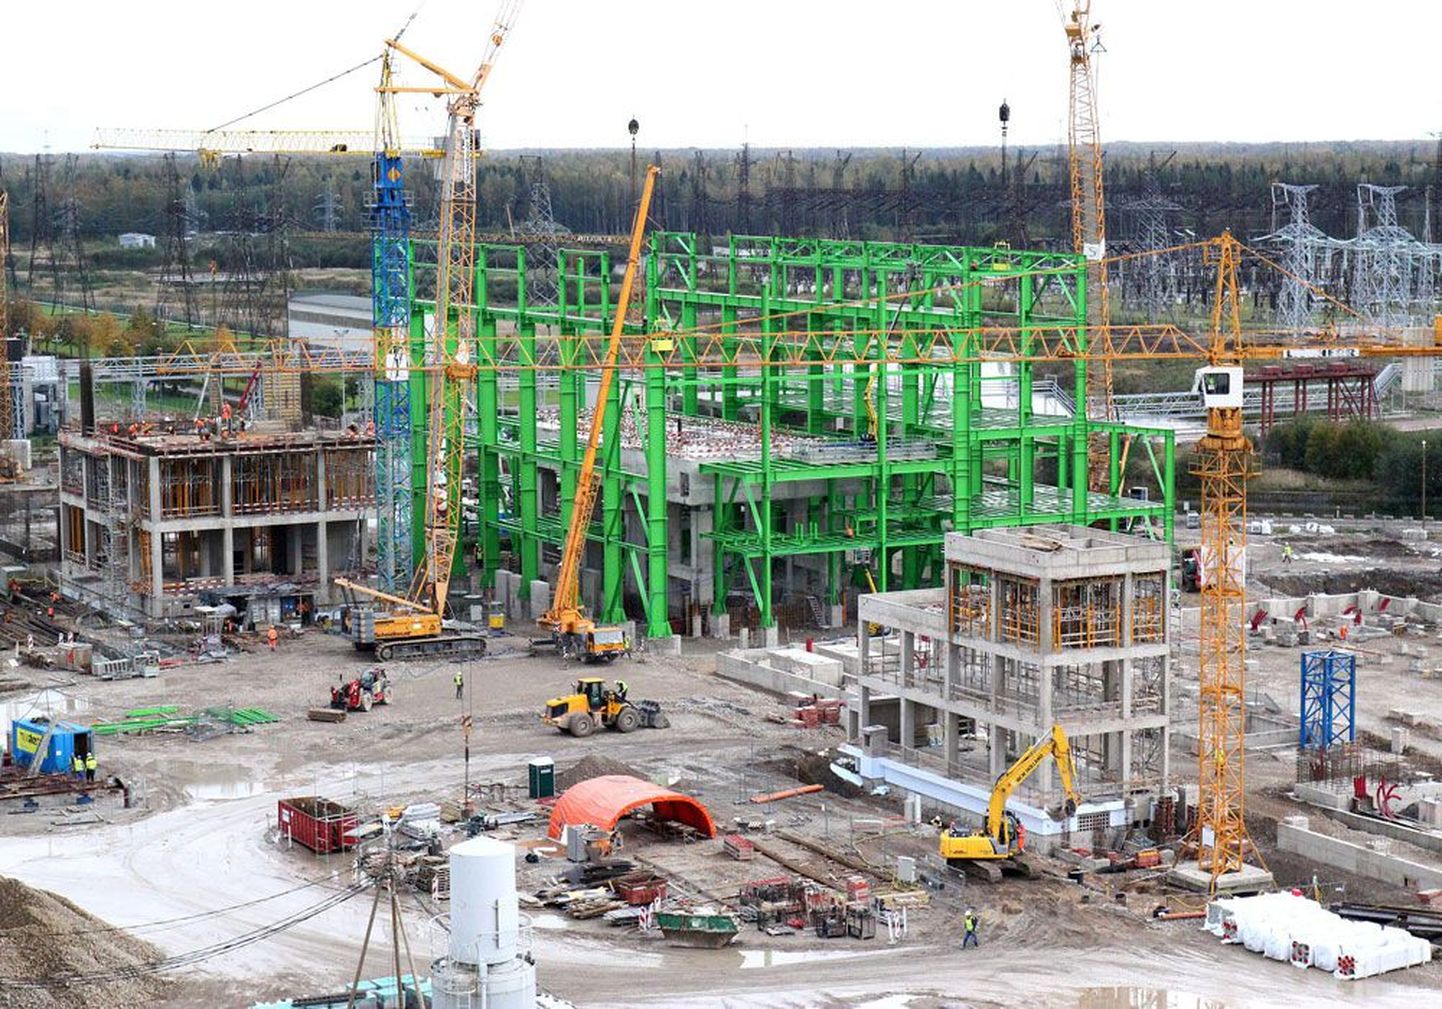 Так выглядит сейчас строящийся новый блок Нарвских электростанций, который планируют сдать в эксплуатацию в 2015 году. Политики спорят, нужно ли было вообще его строить.